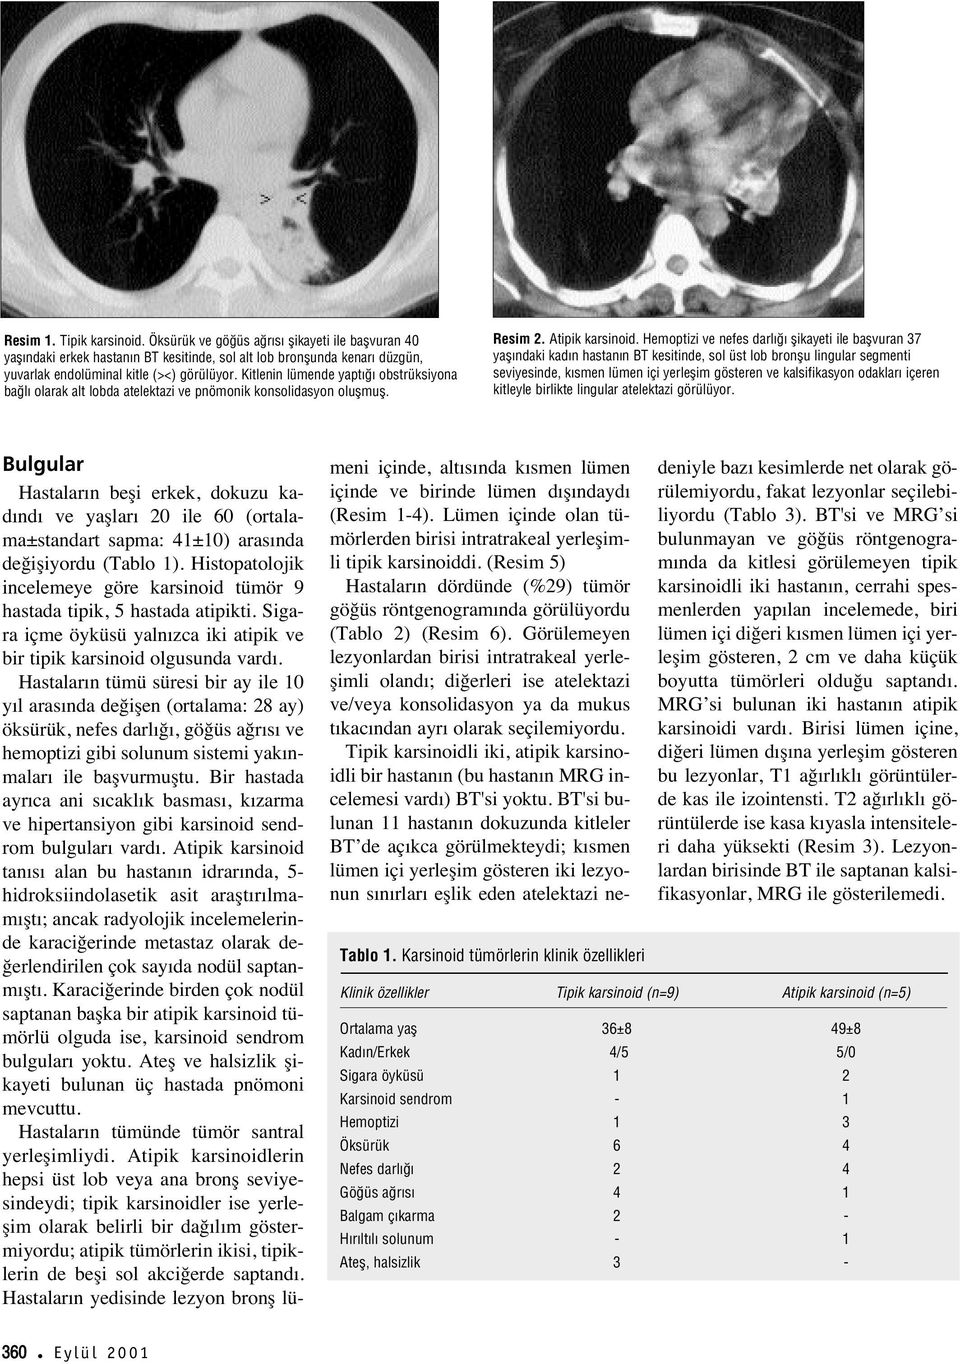 Hemoptizi ve nefes darl flikayeti ile baflvuran 37 yafl ndaki kad n hastan n BT kesitinde, sol üst lob bronflu lingular segmenti seviyesinde, k smen lümen içi yerleflim gösteren ve kalsifikasyon